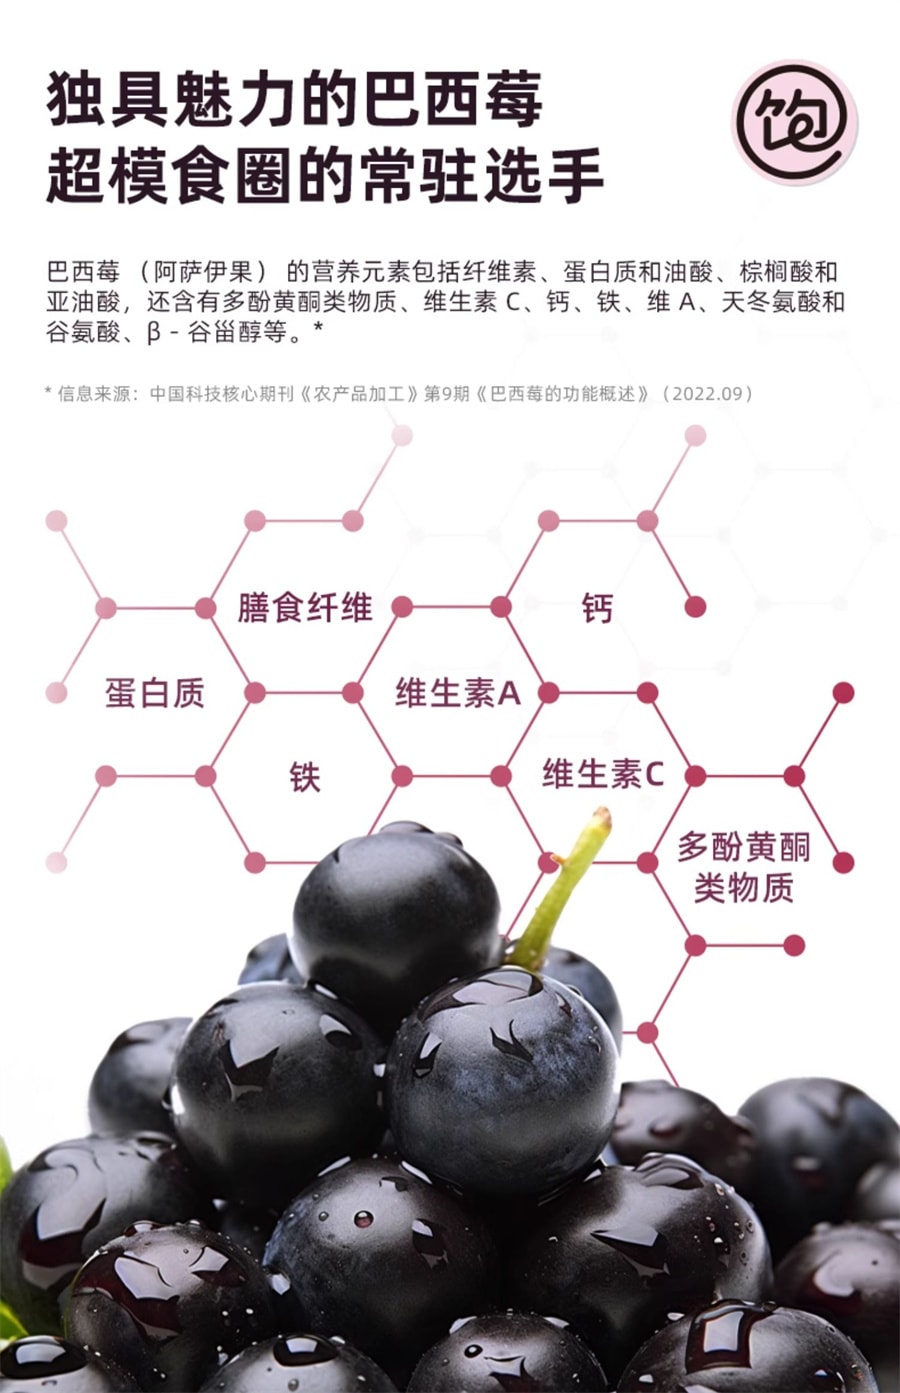 【中國直效郵件】王飽飽 巴西莓粉花青素蔬果纖維粉沖飲品 10條裝/盒